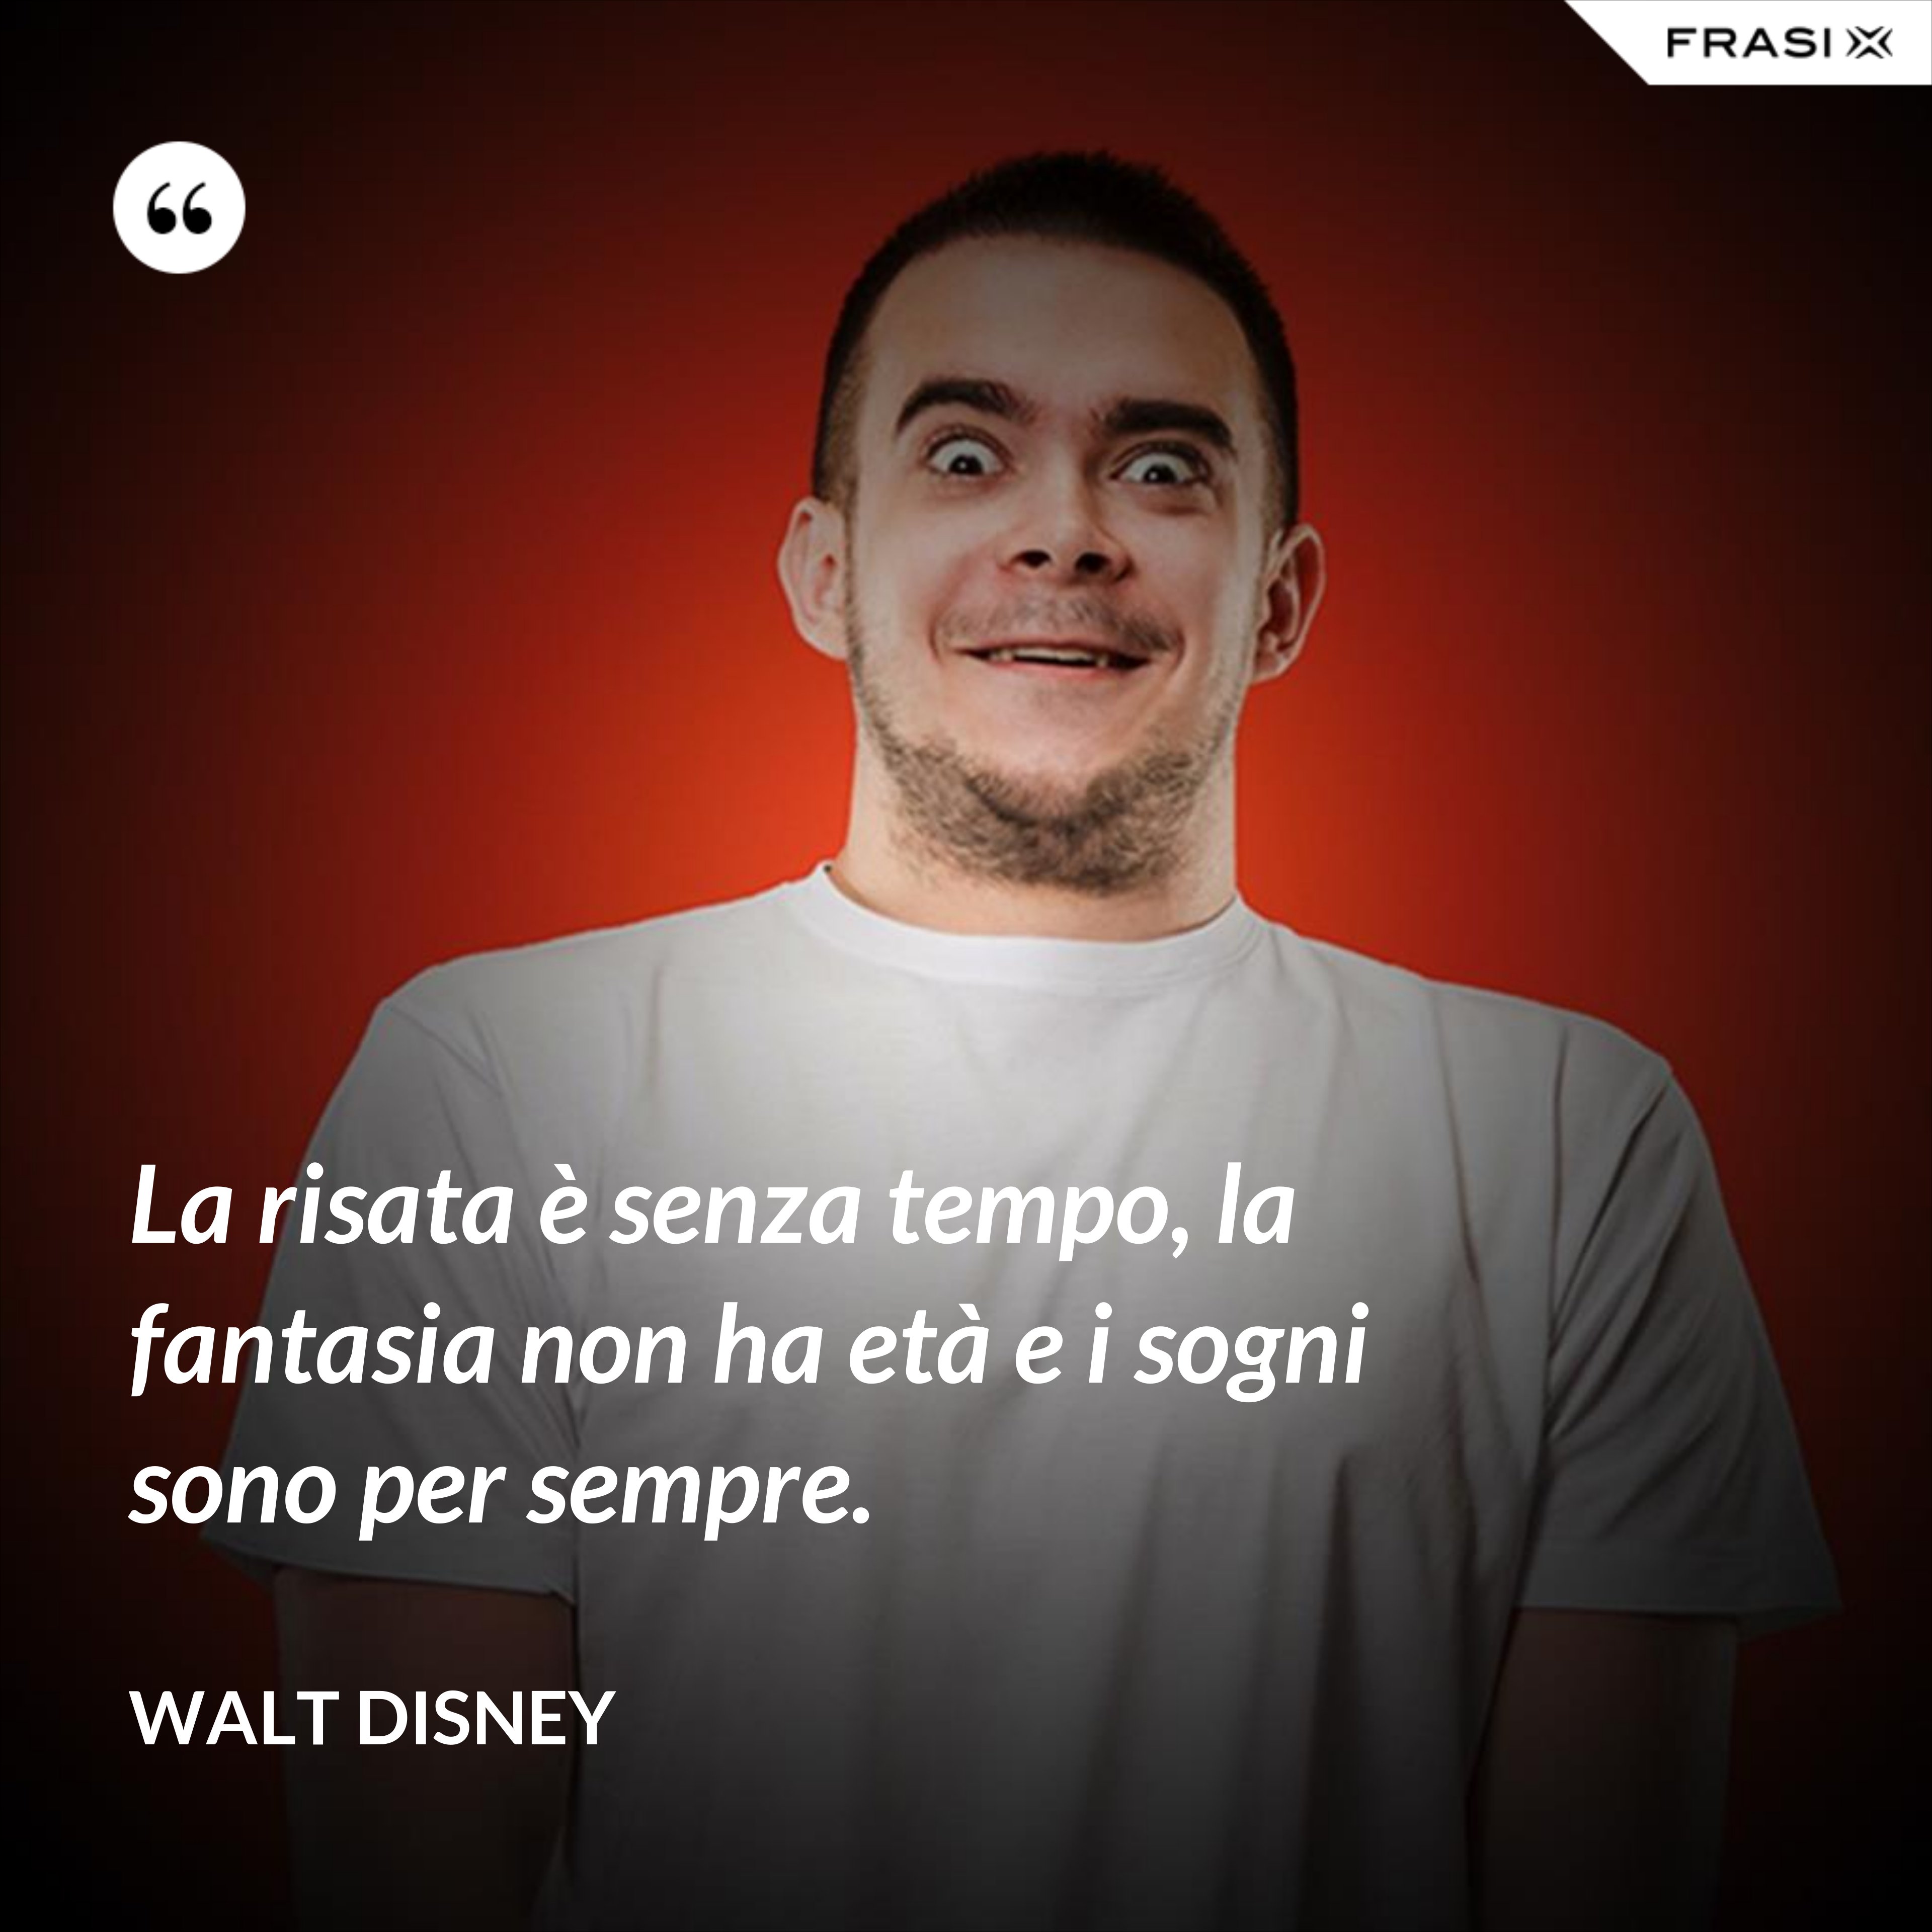 La risata è senza tempo, la fantasia non ha età e i sogni sono per sempre. - Walt Disney